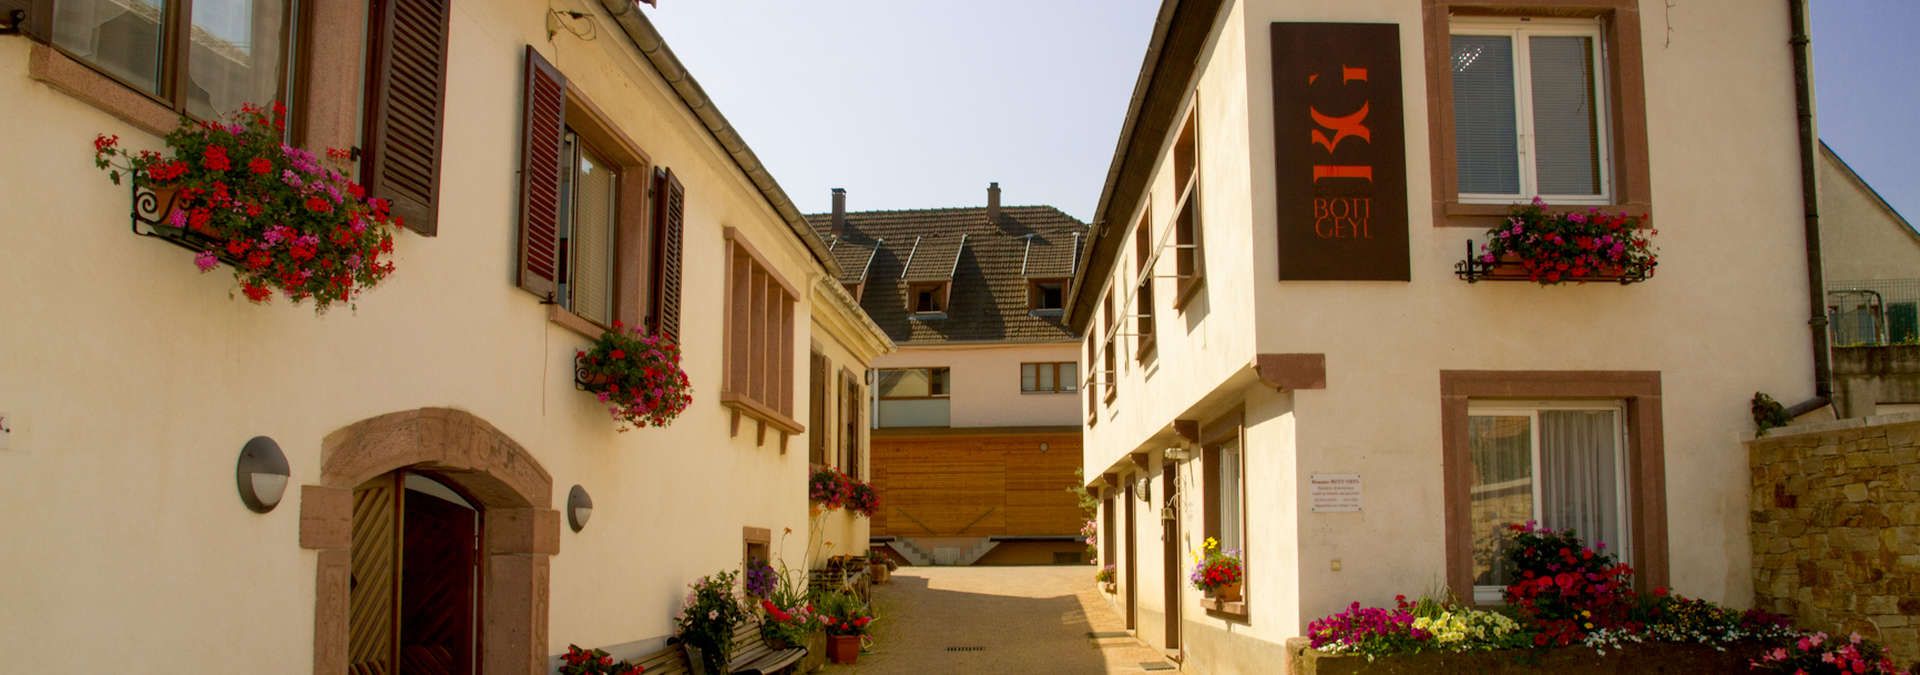 Domaine Bott Geyl - Rue des Vignerons